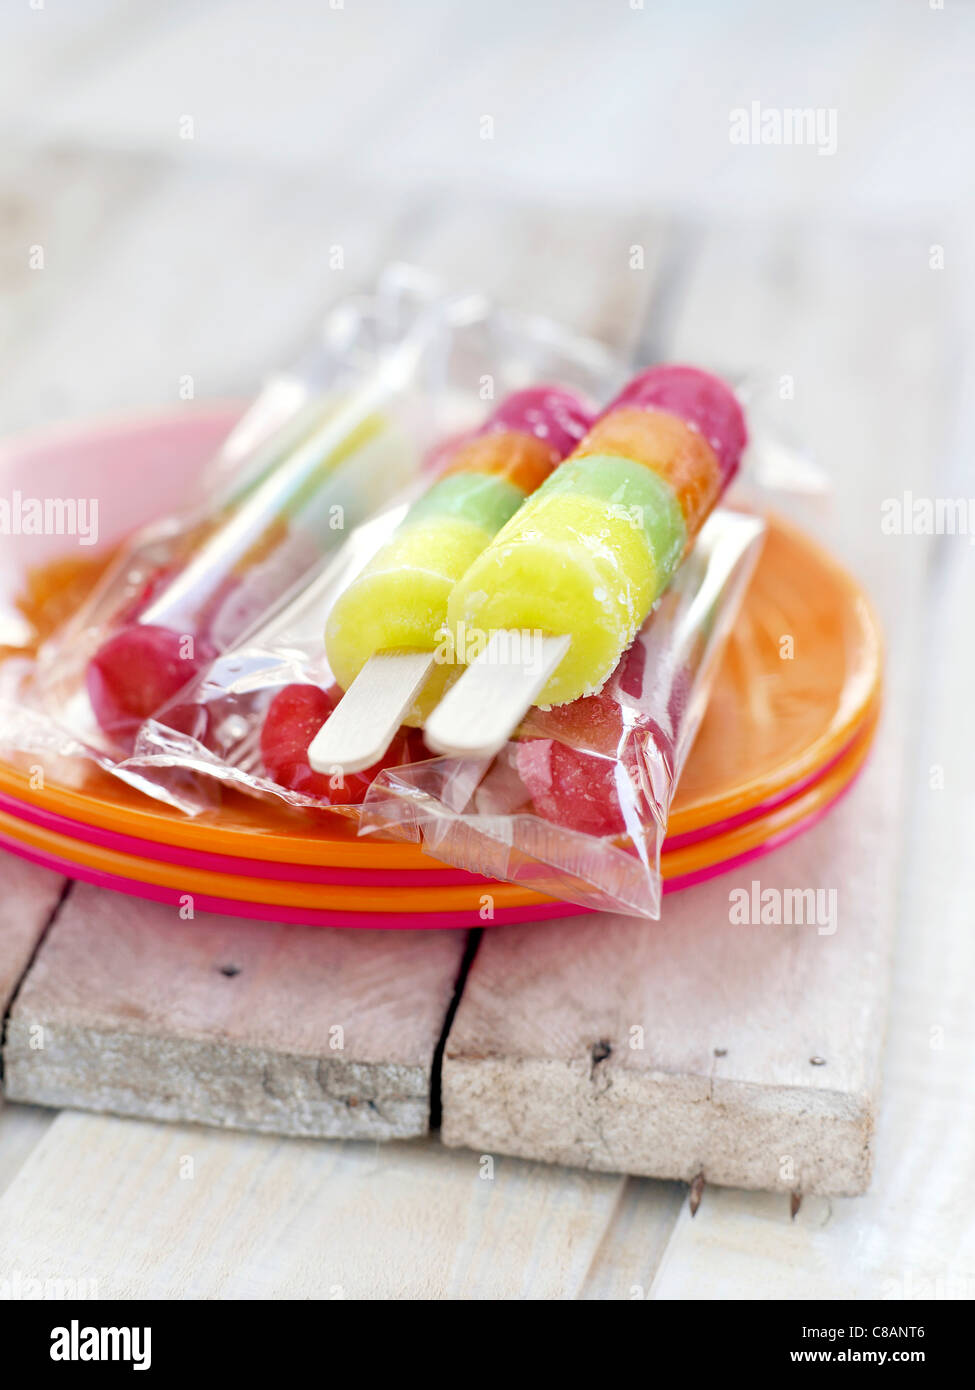 Multicolored ice lollipops Stock Photo